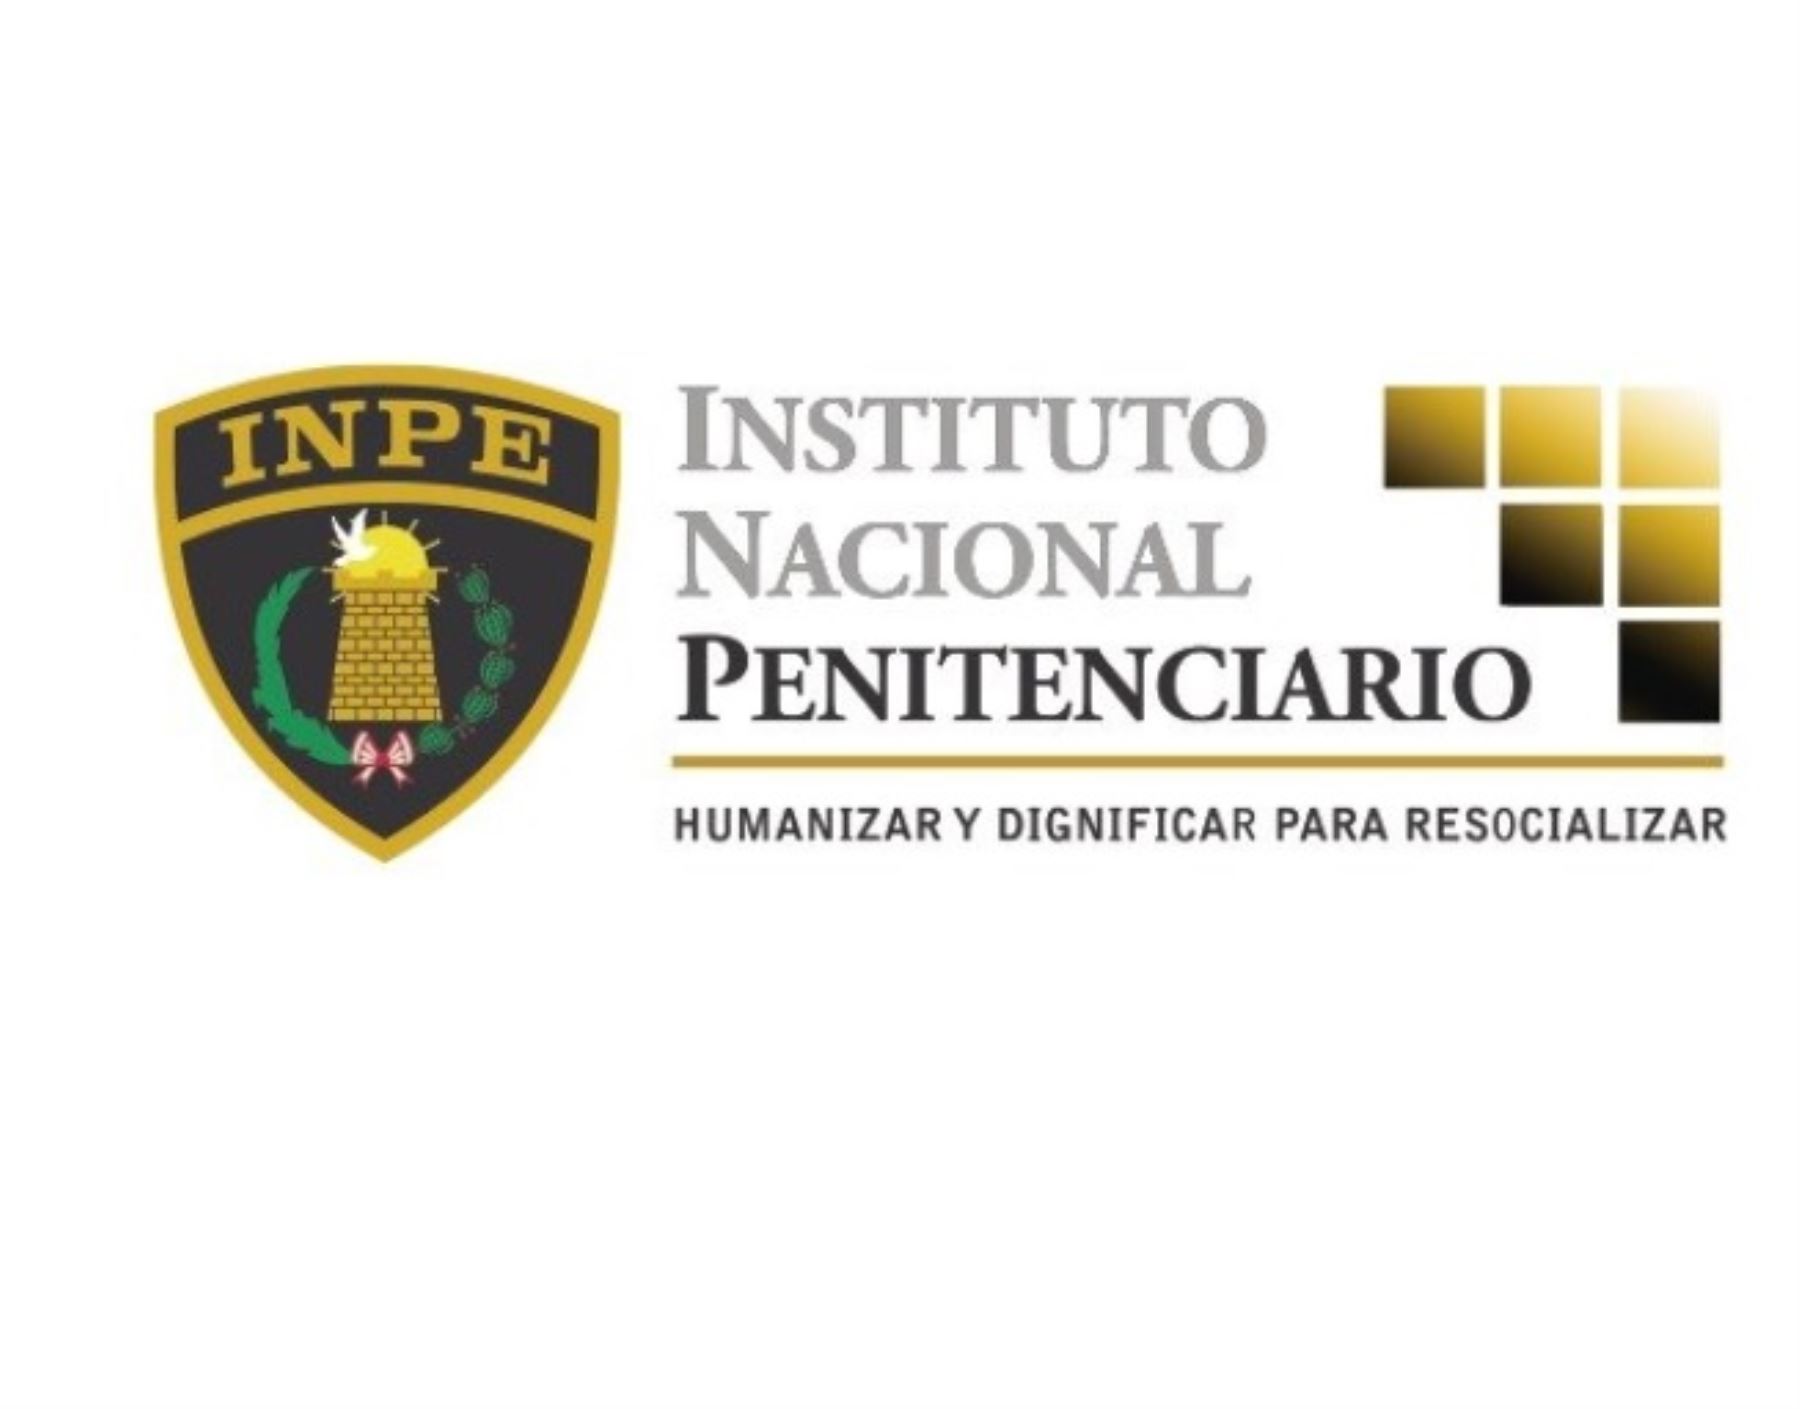 Instituto Nacional Penitenciario (INPE)